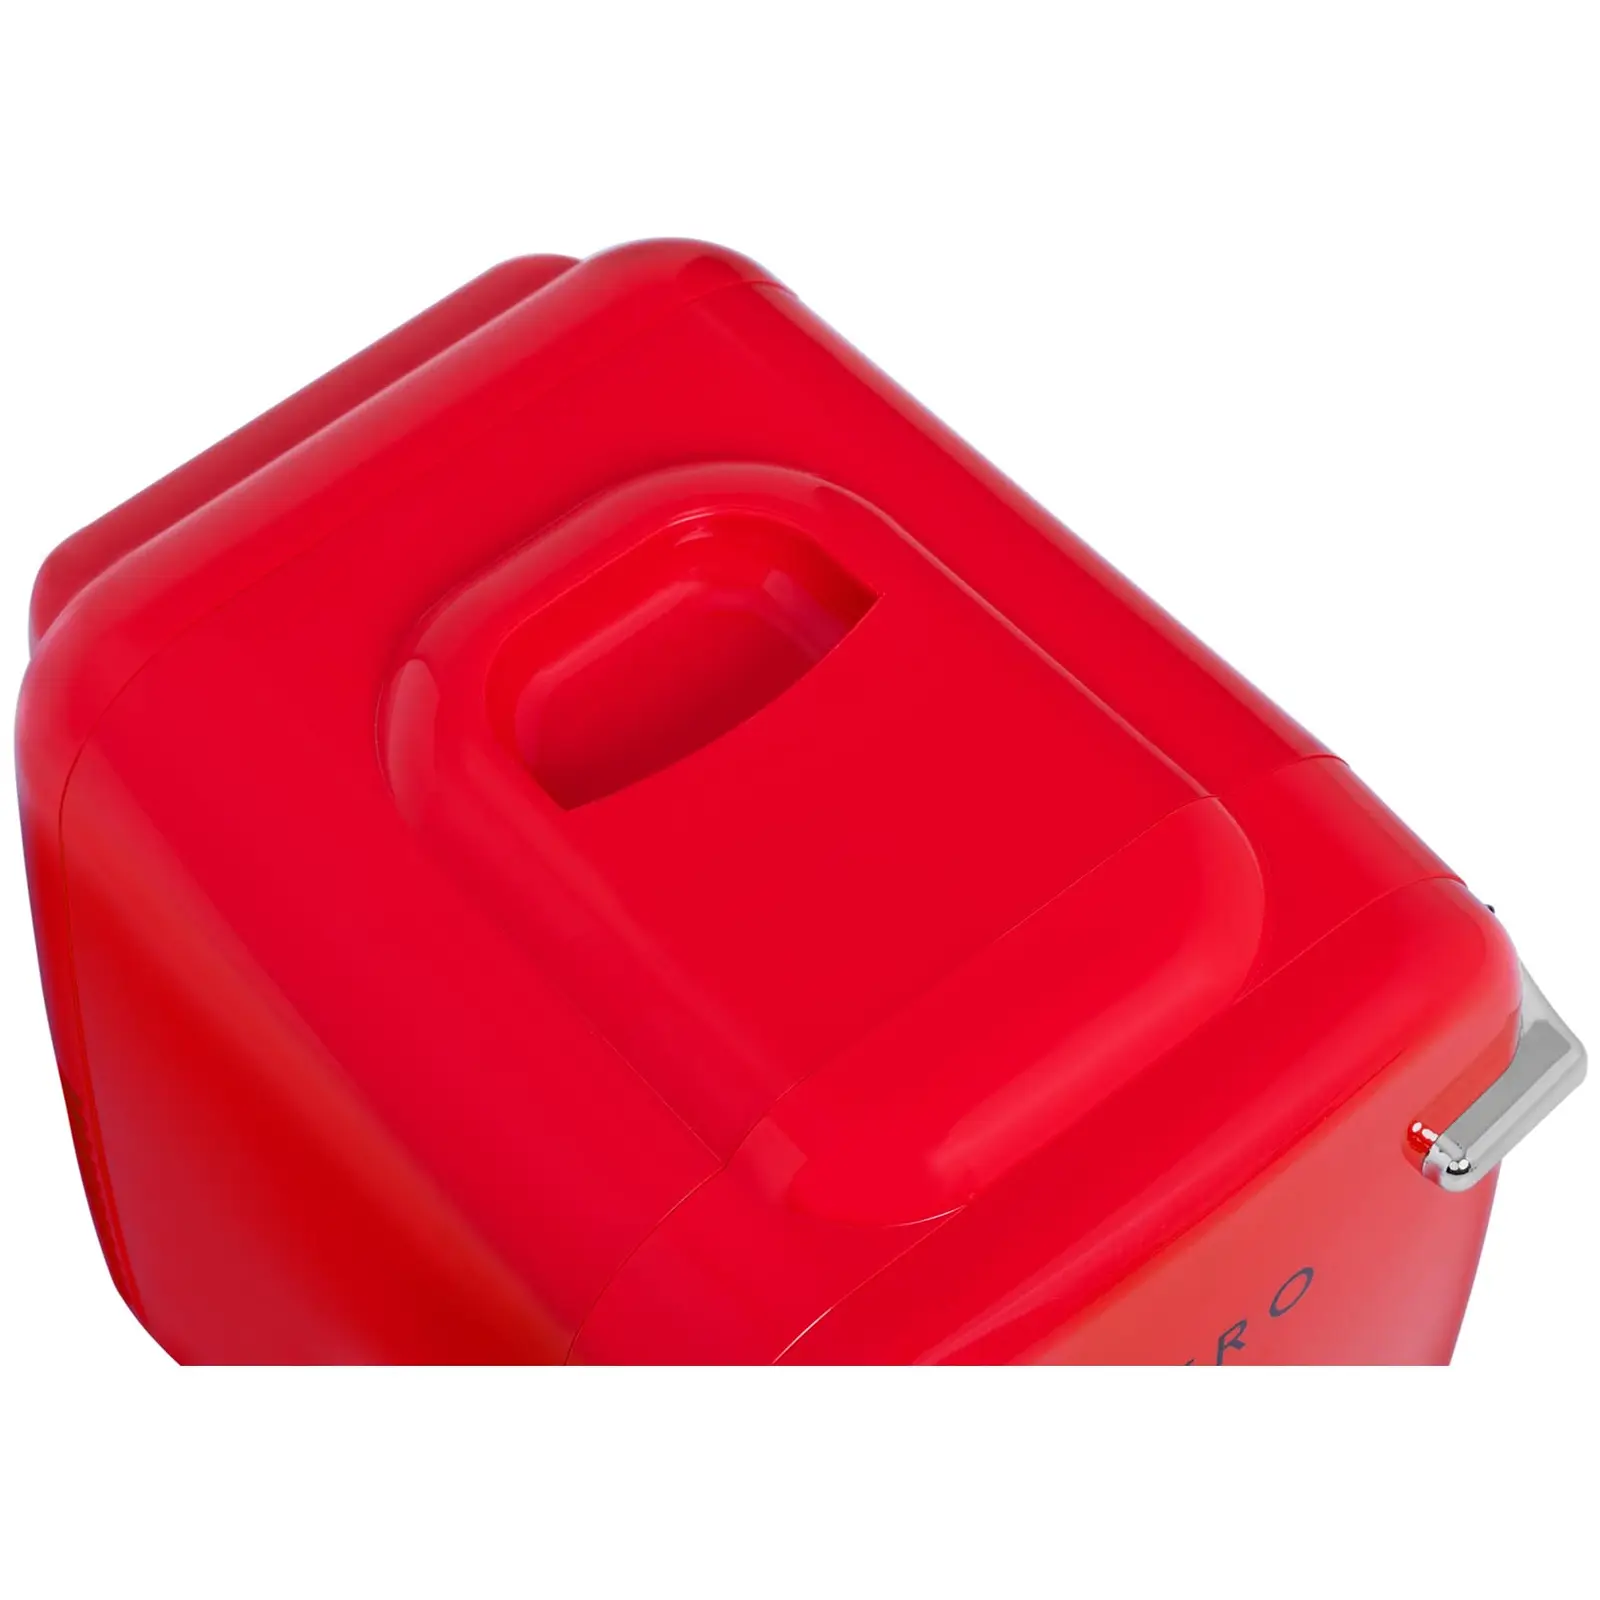 Mini Kühlschrank - 4 L - rot